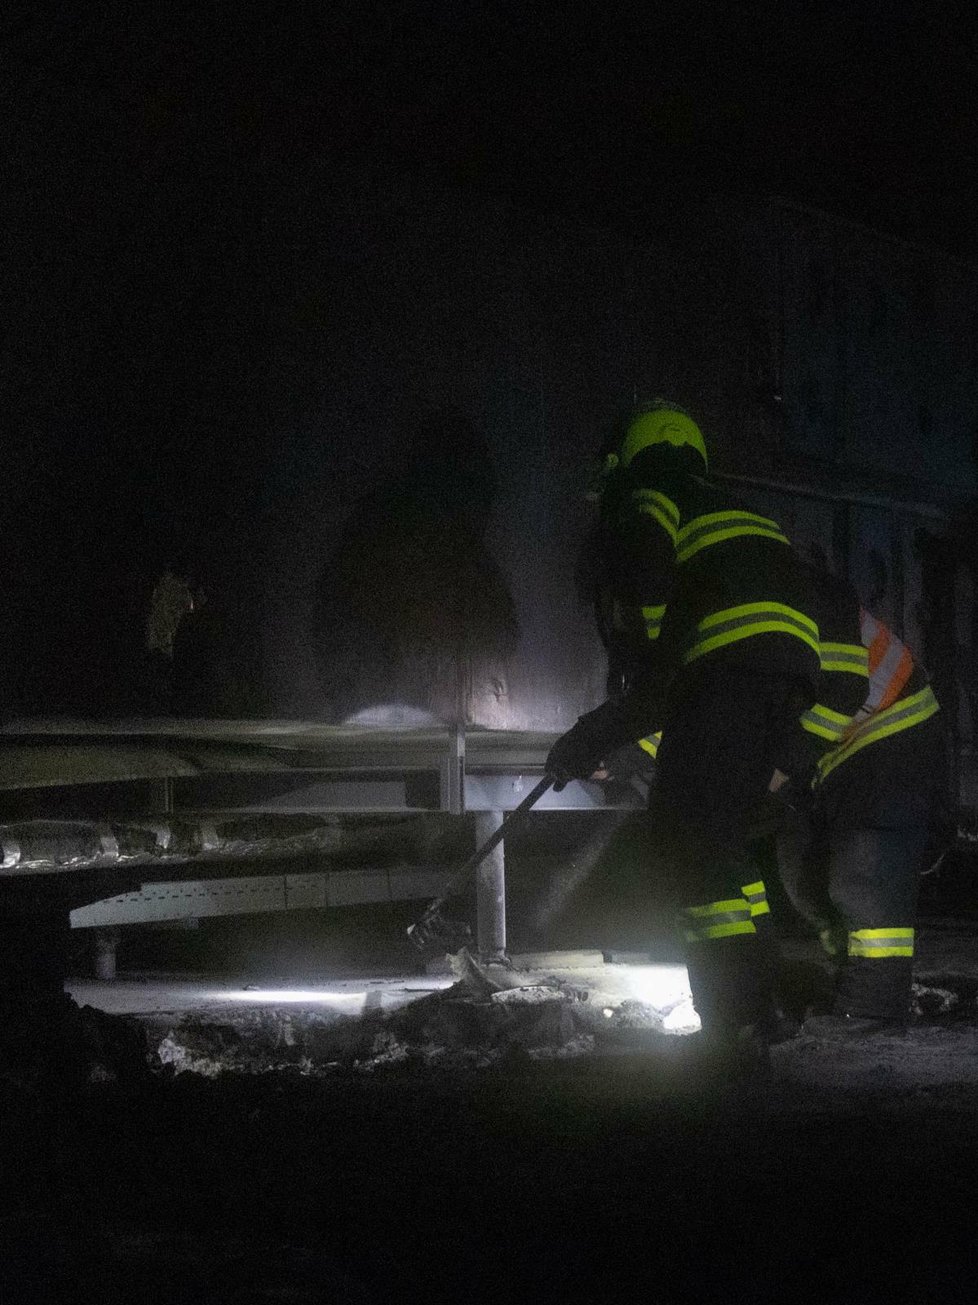 Hasiči v Olomouckém kraji zasahovali u 16 požárů.